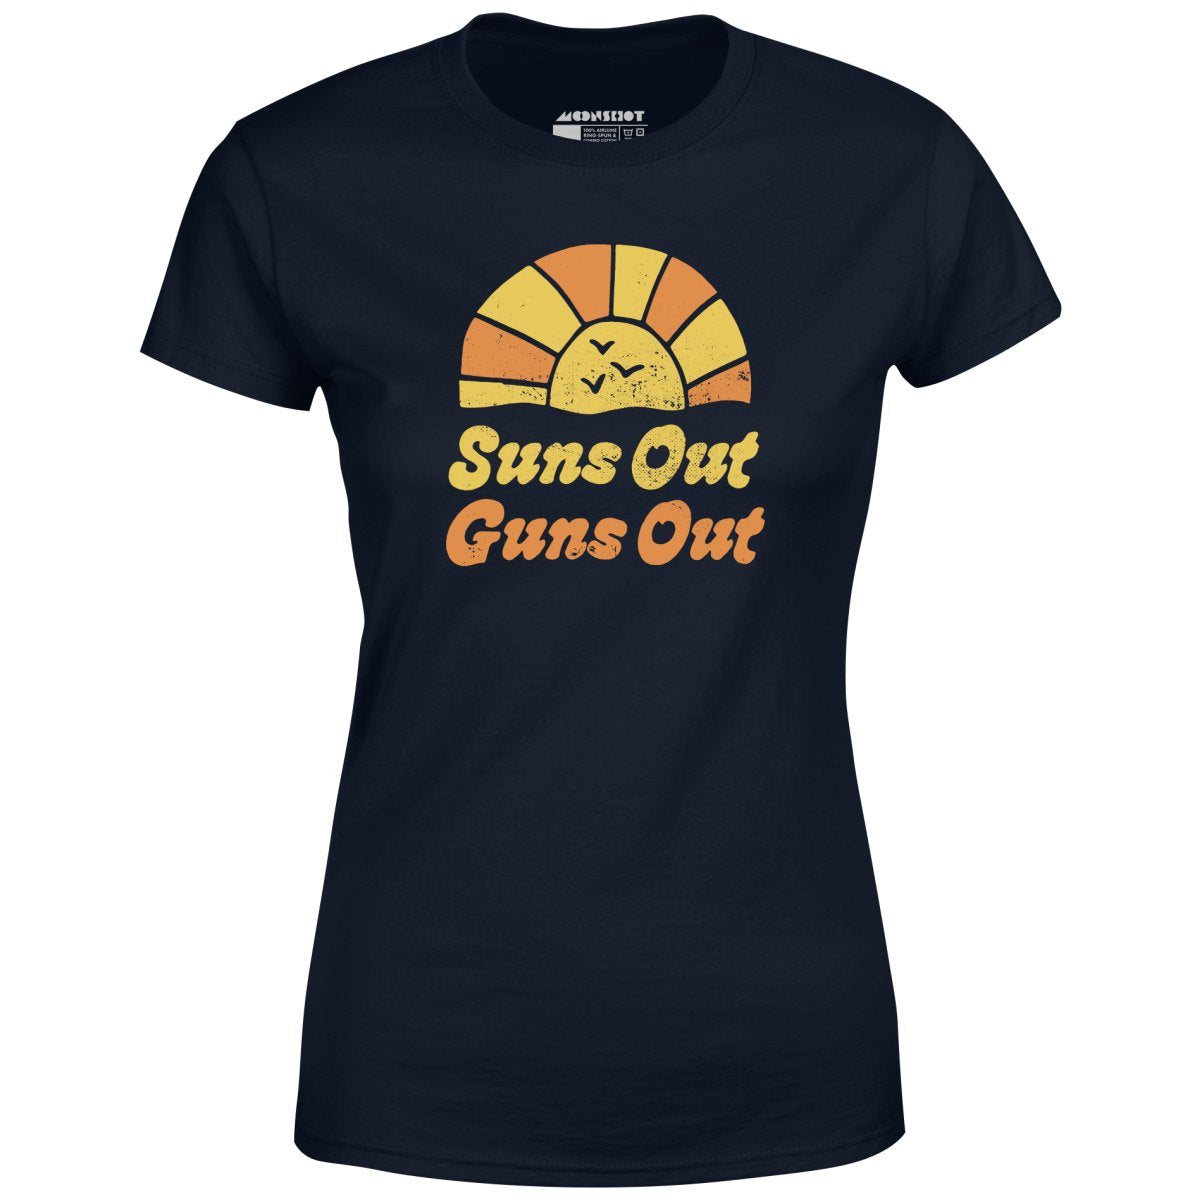 Suns Out Guns Out - Women's T-Shirt